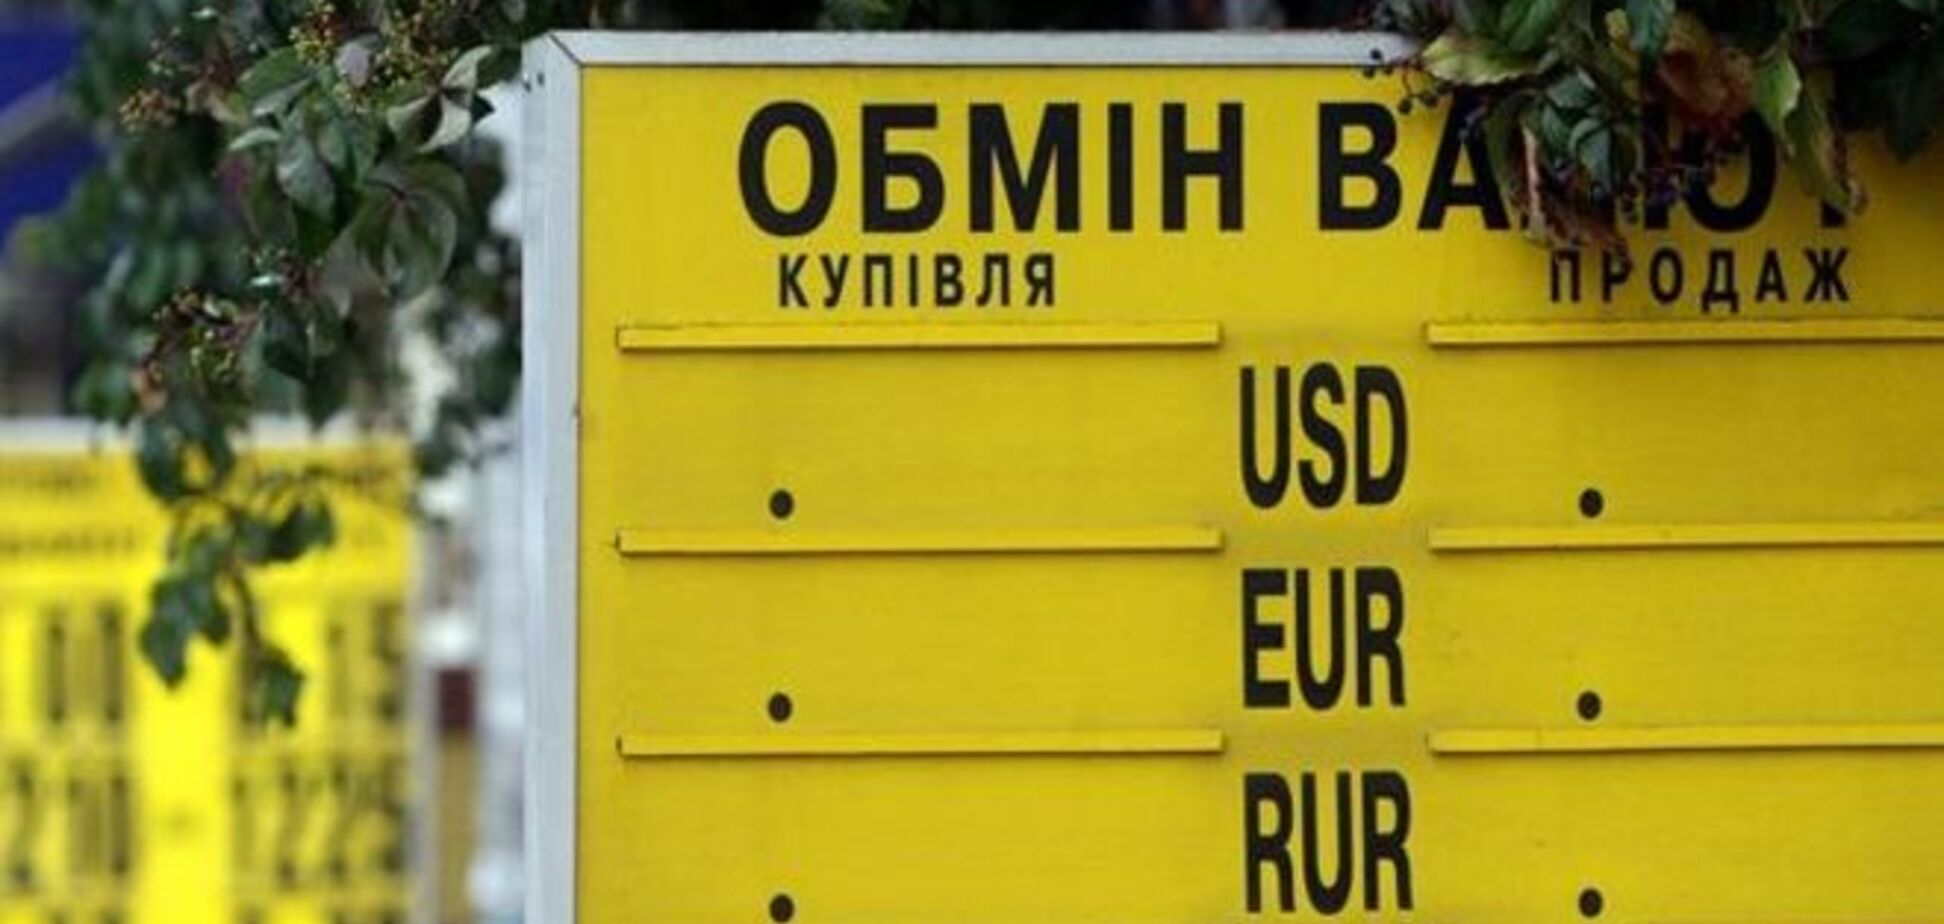 Нацбанк передал МВД список незаконных пунктов обмена валюты